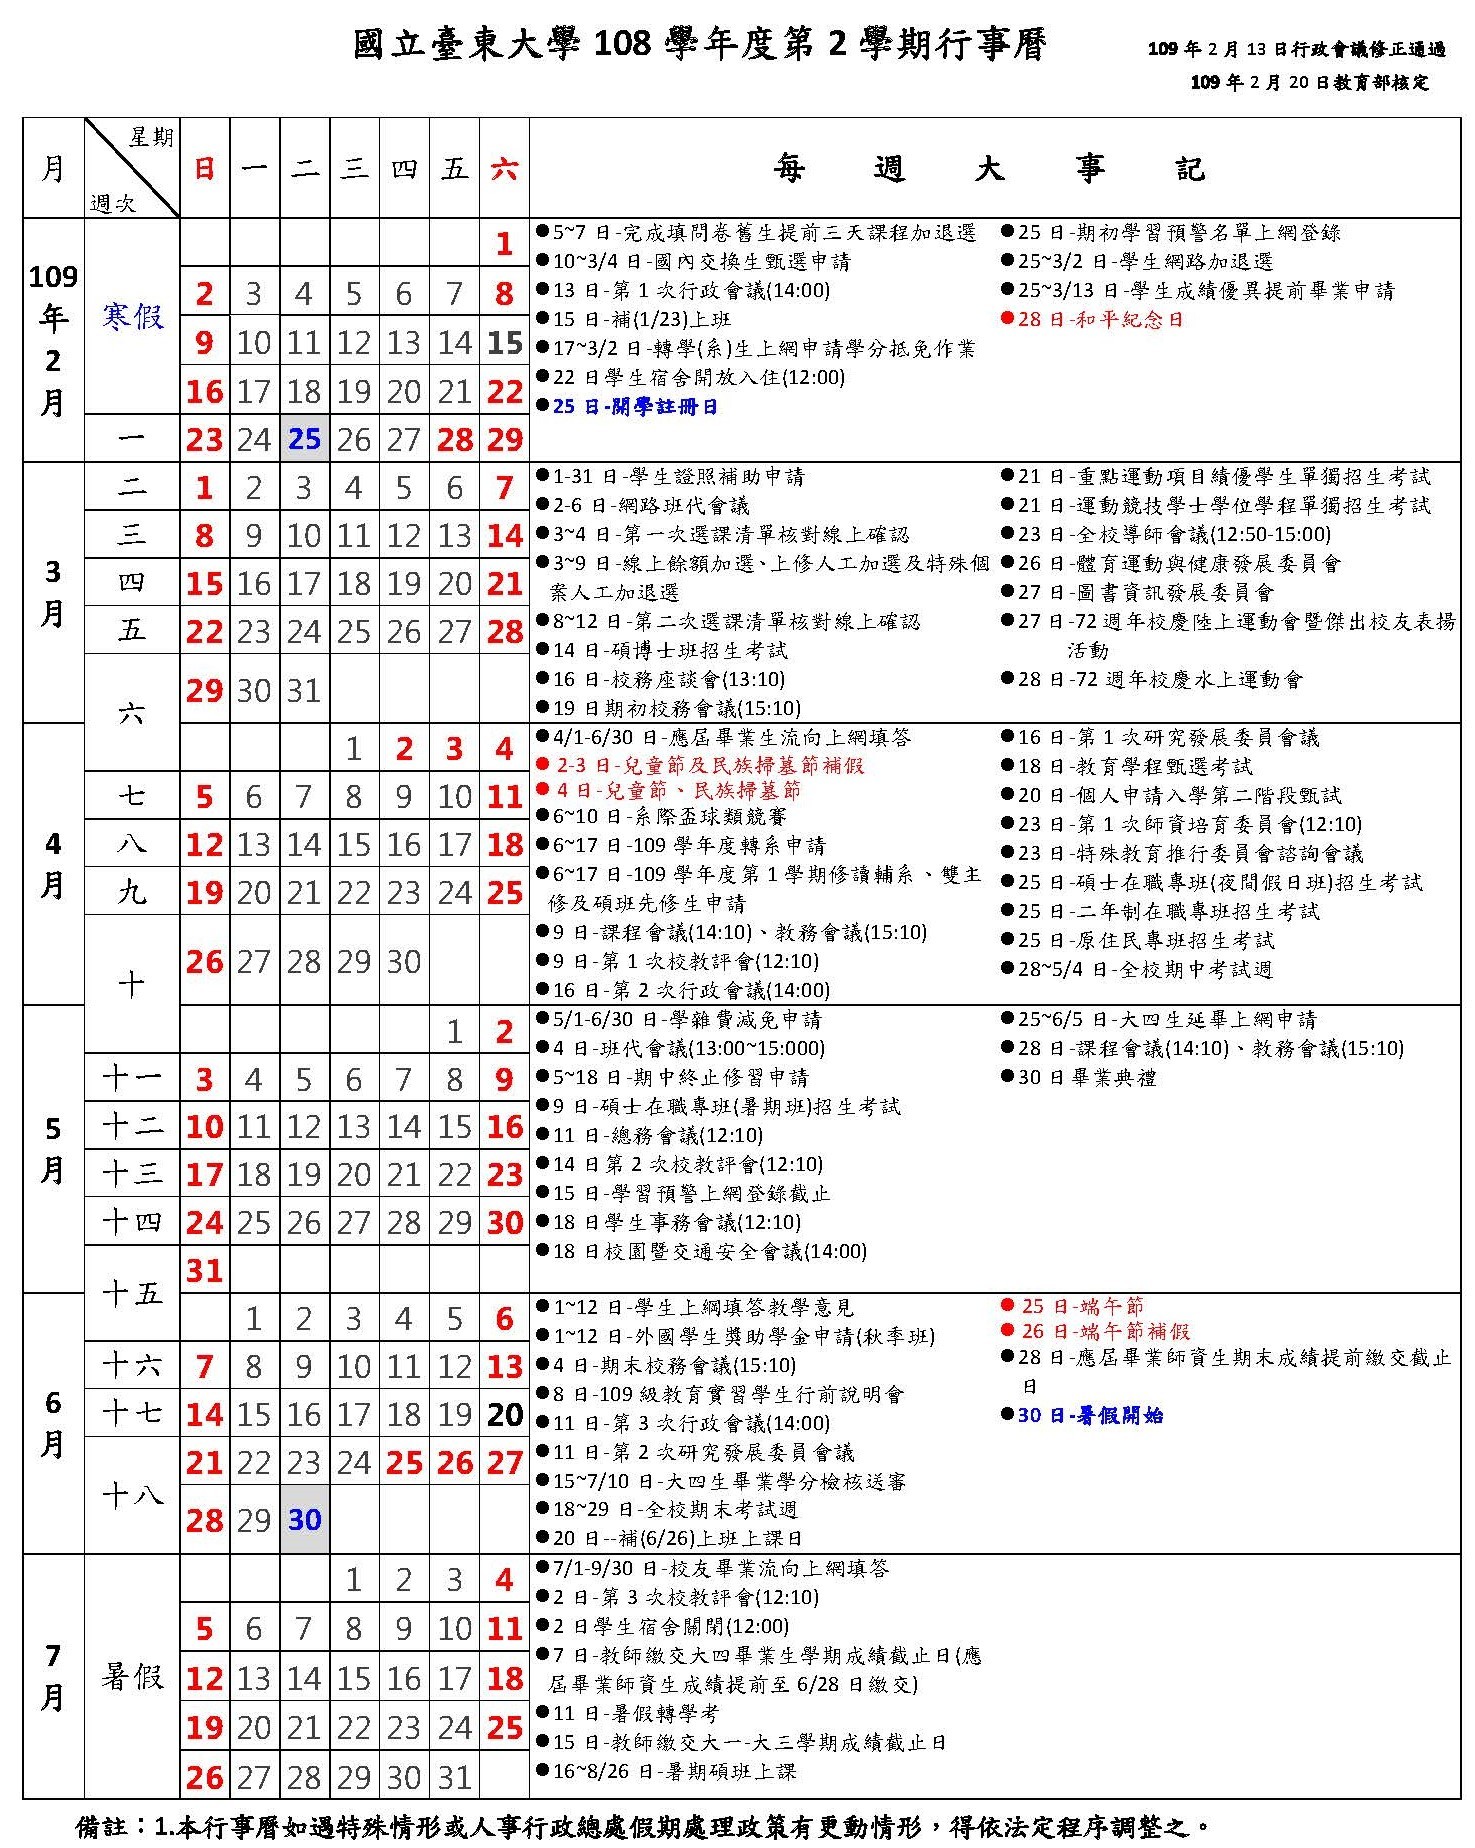 國立臺東大學108學年度第2學期行事曆(2020.02.20)